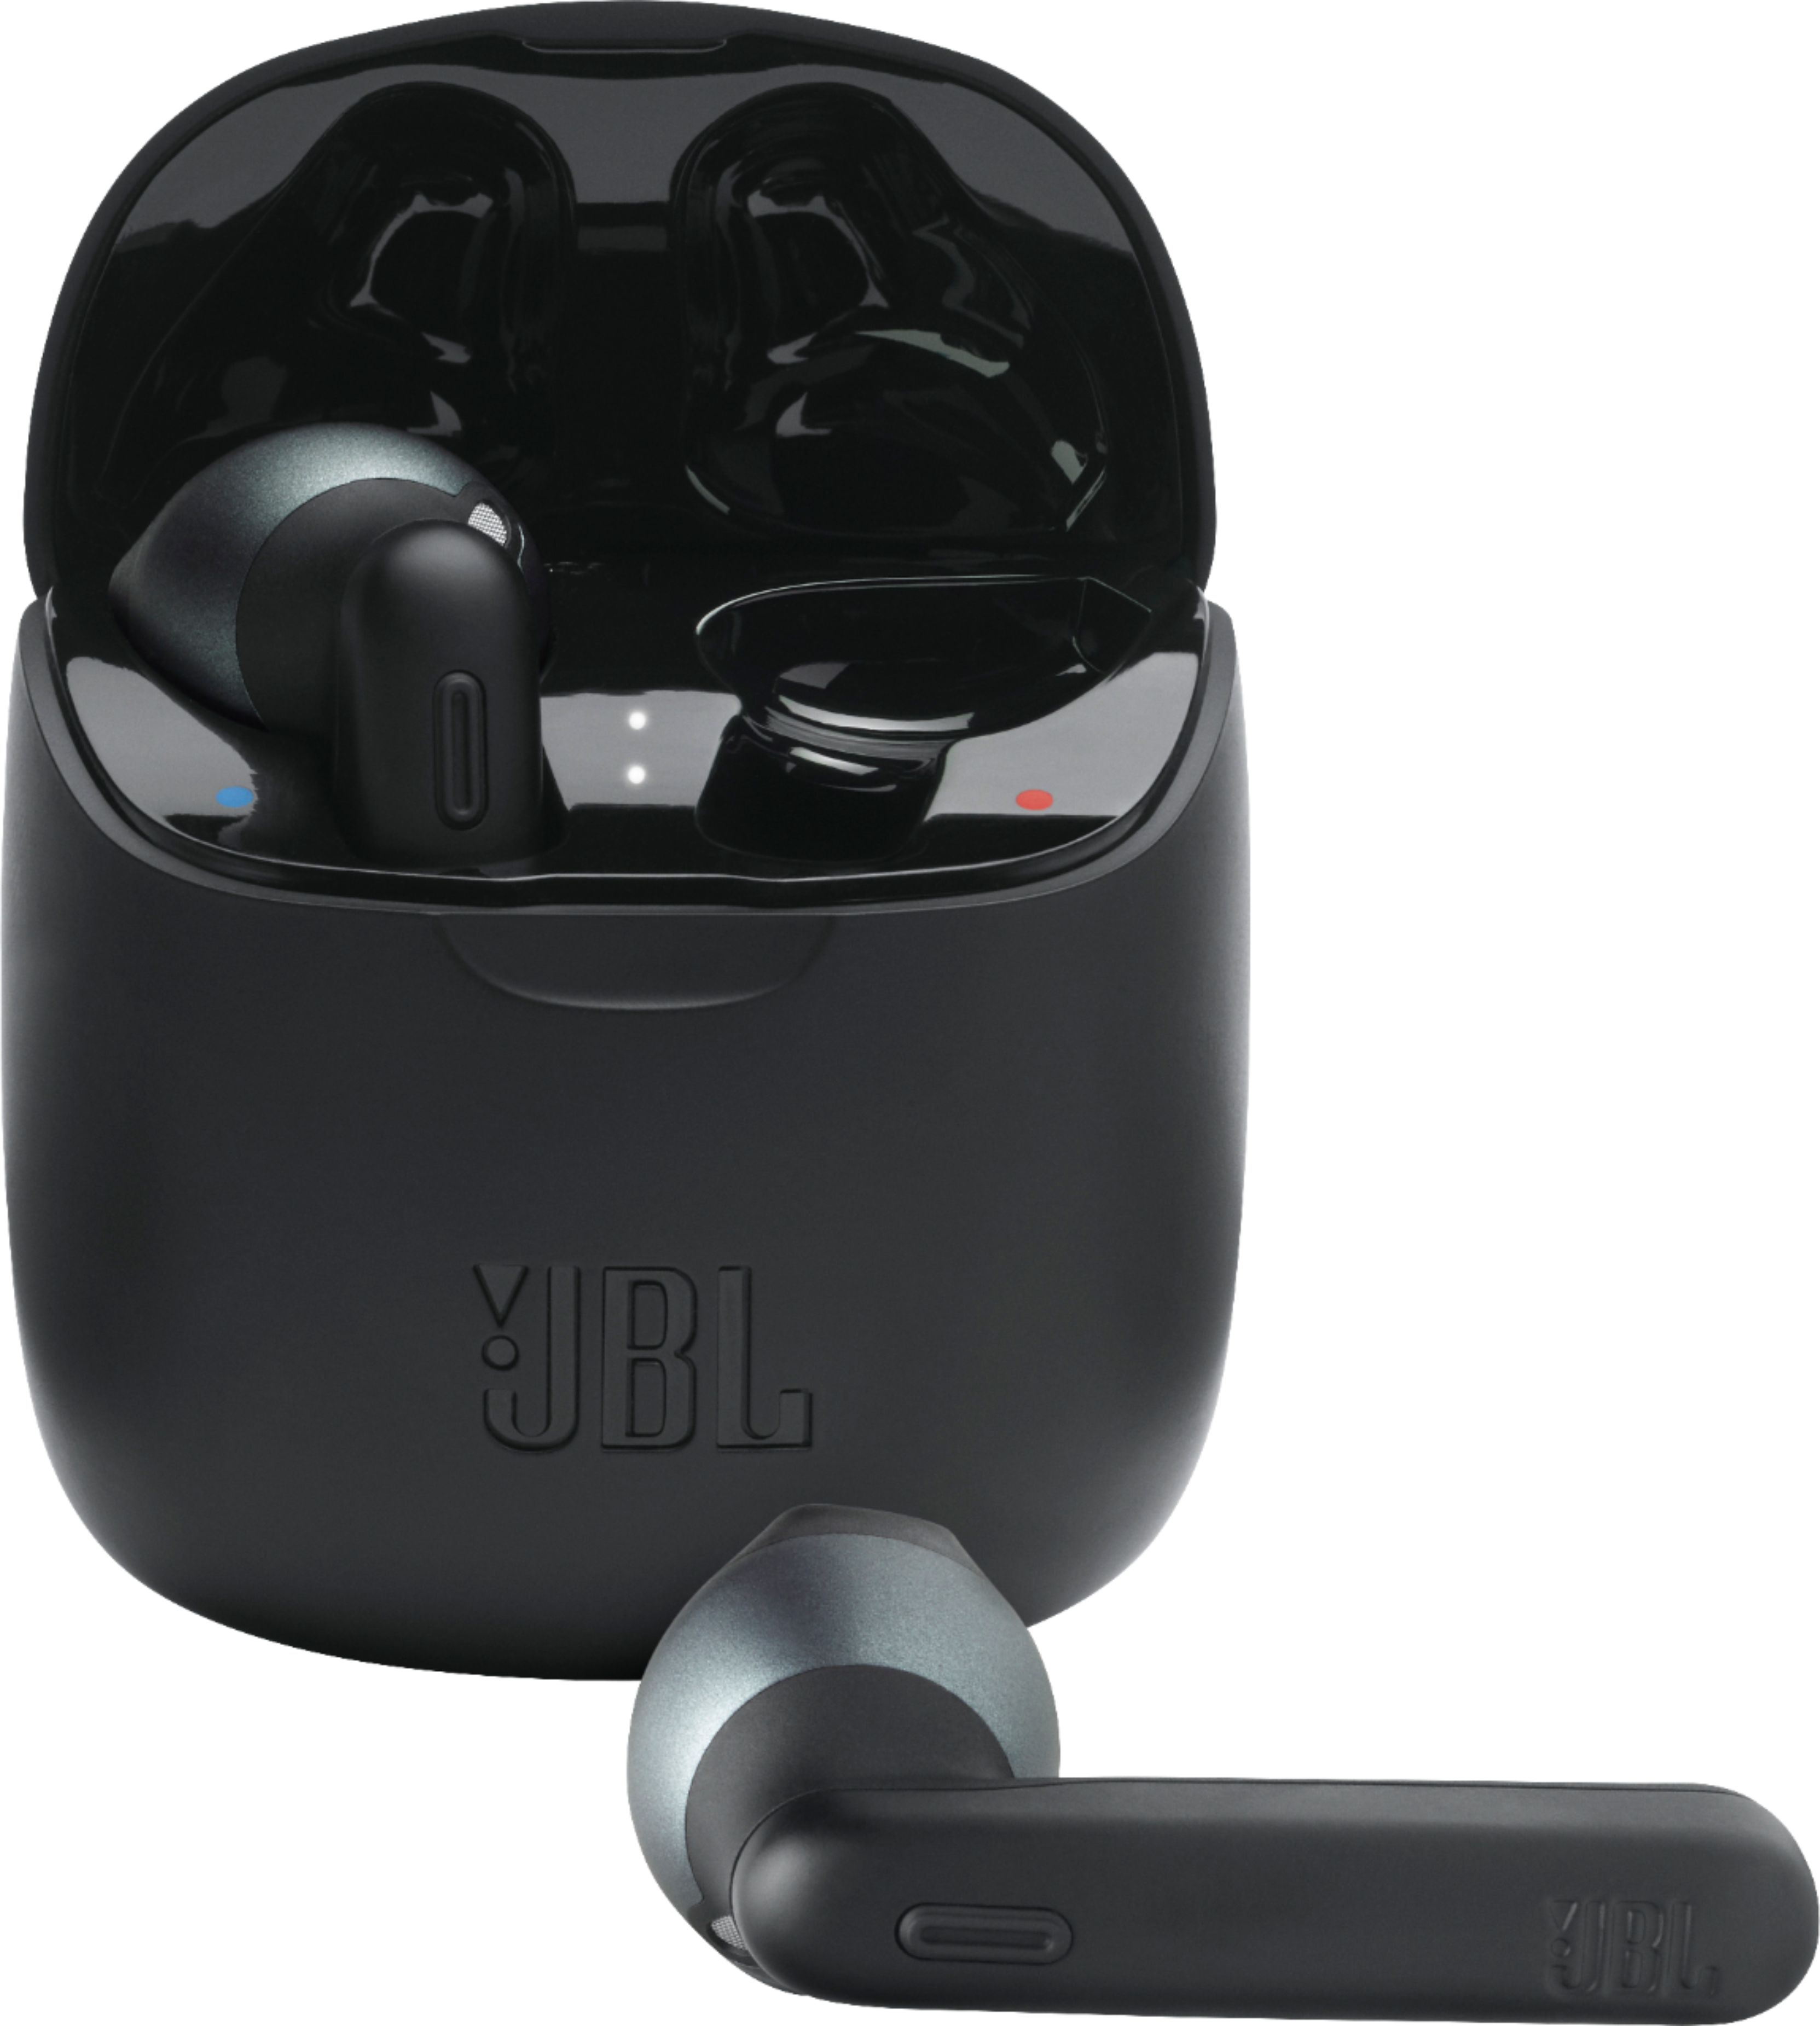 Angle View: JBL - Tune 225TWS True Wireless In-Ear Headphones - Black